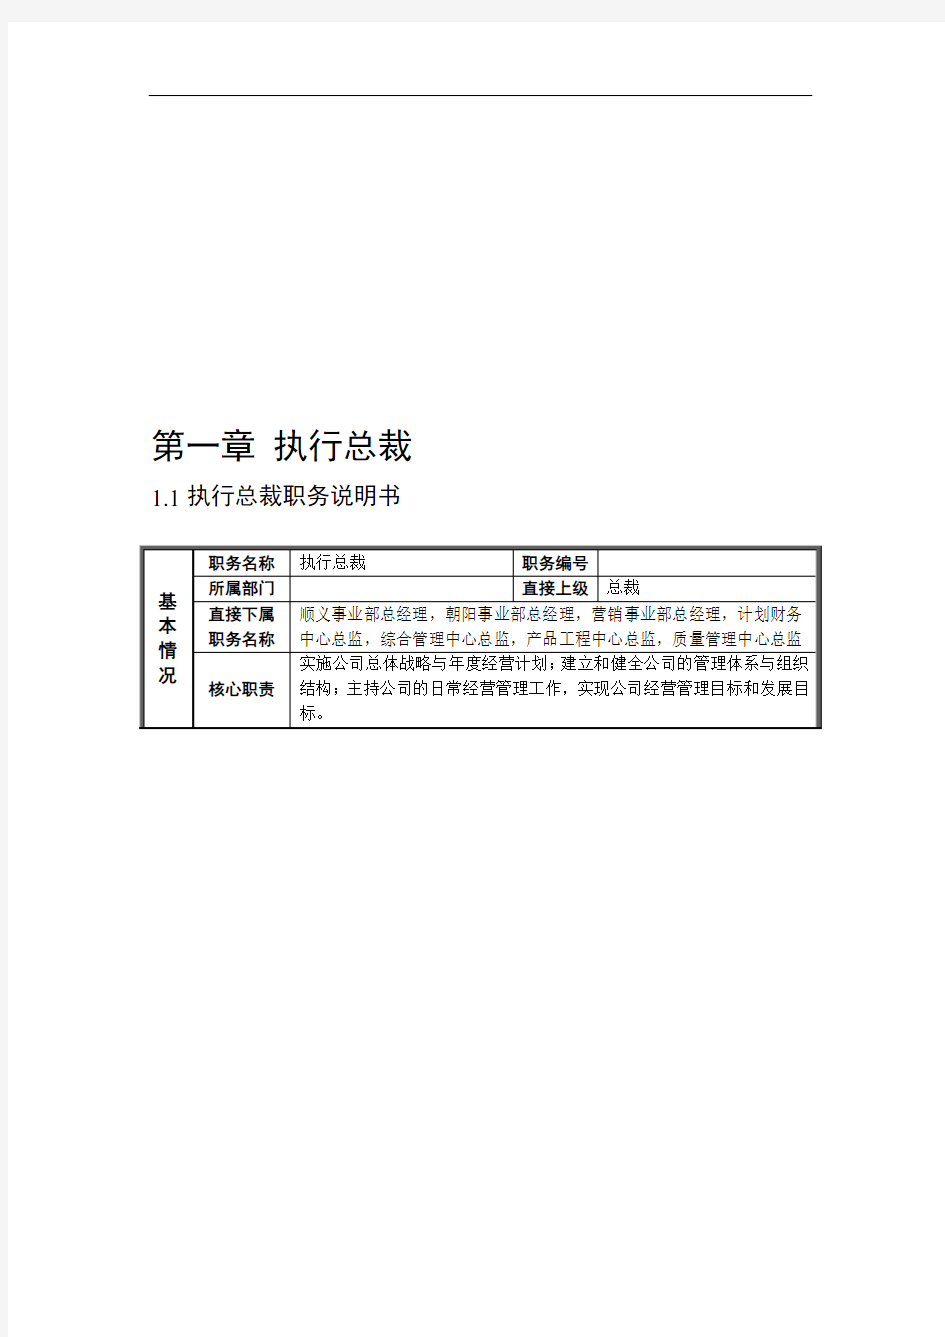 新华信-北京汽车制造厂有限公司战略规划实施及管理提升项目